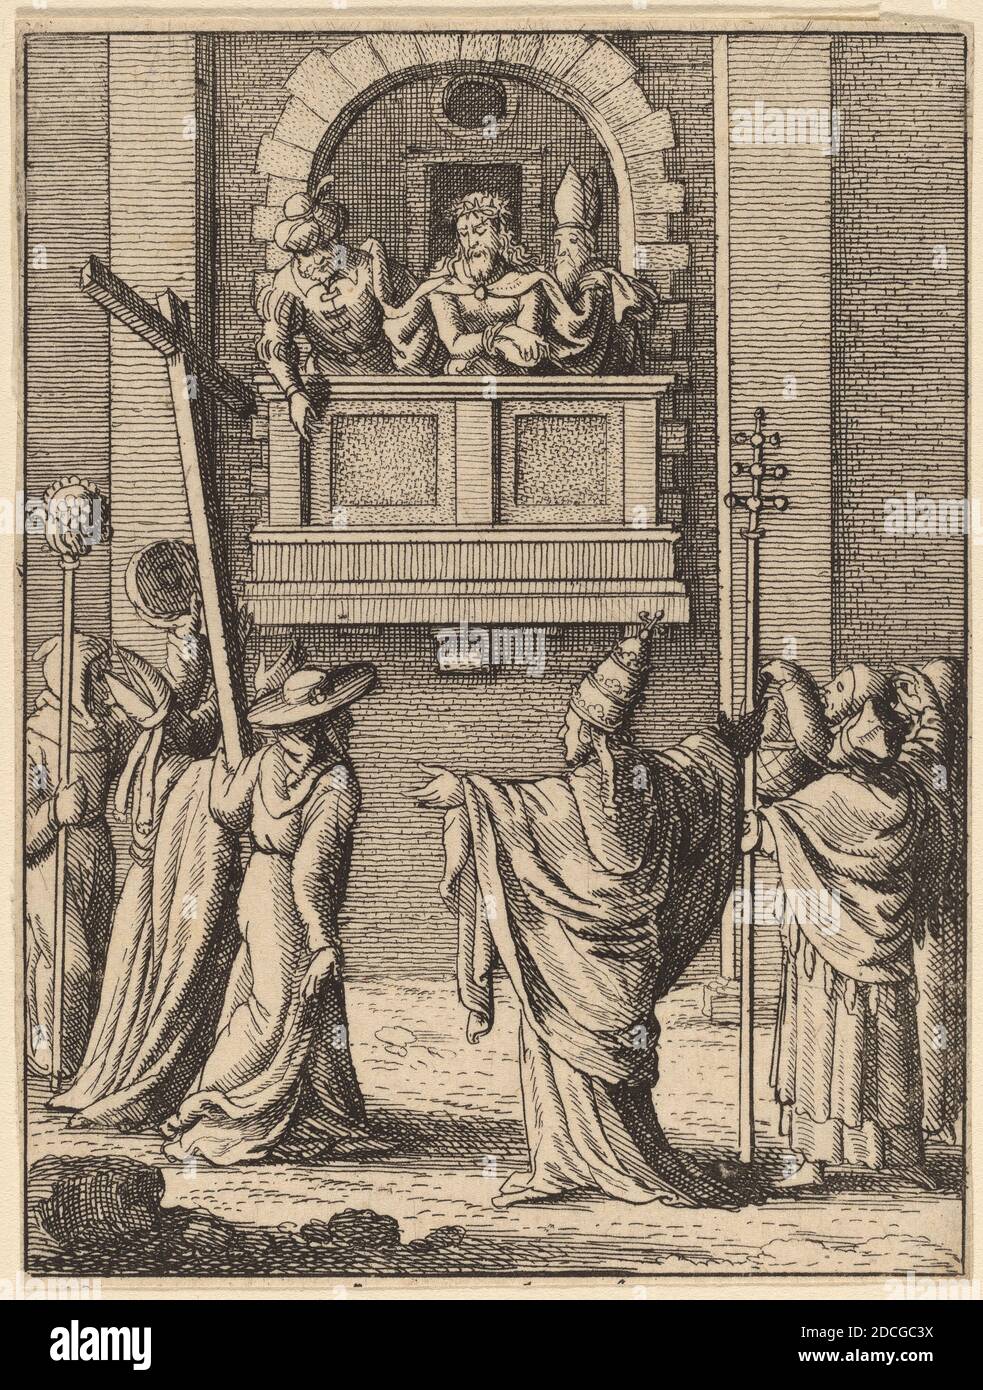 Venceslaus Hollar, (artiste), Bohemian, 1607 - 1677, Ecce Homo, la passion satirique, (série), gravure Banque D'Images